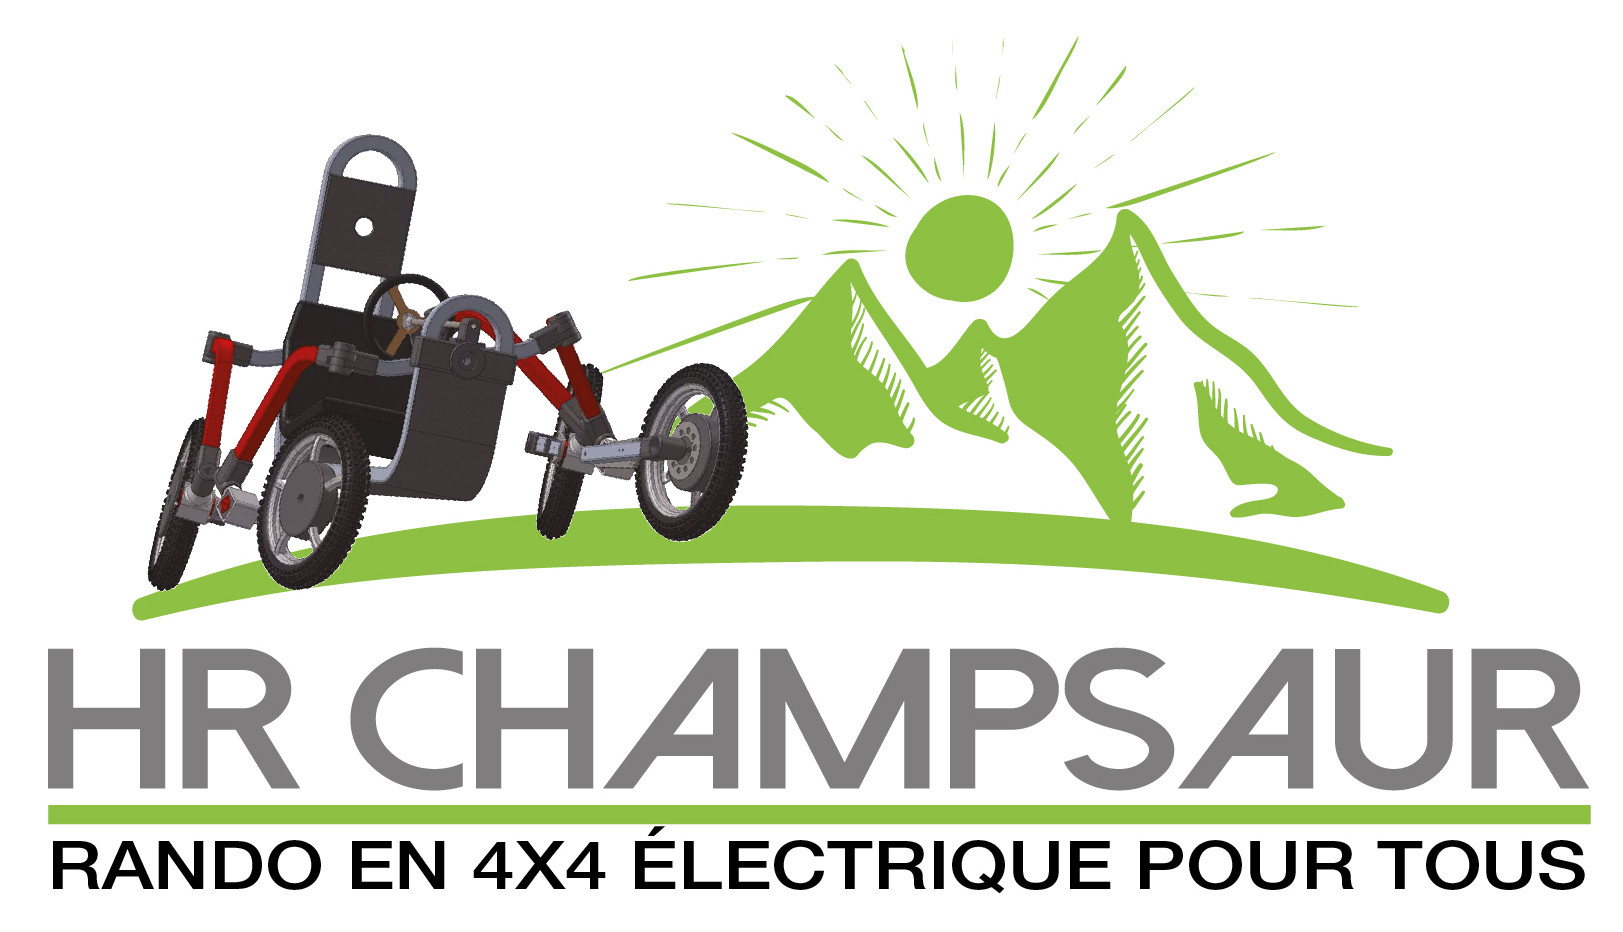 Association HRChampsaur - Foire Expo Gap